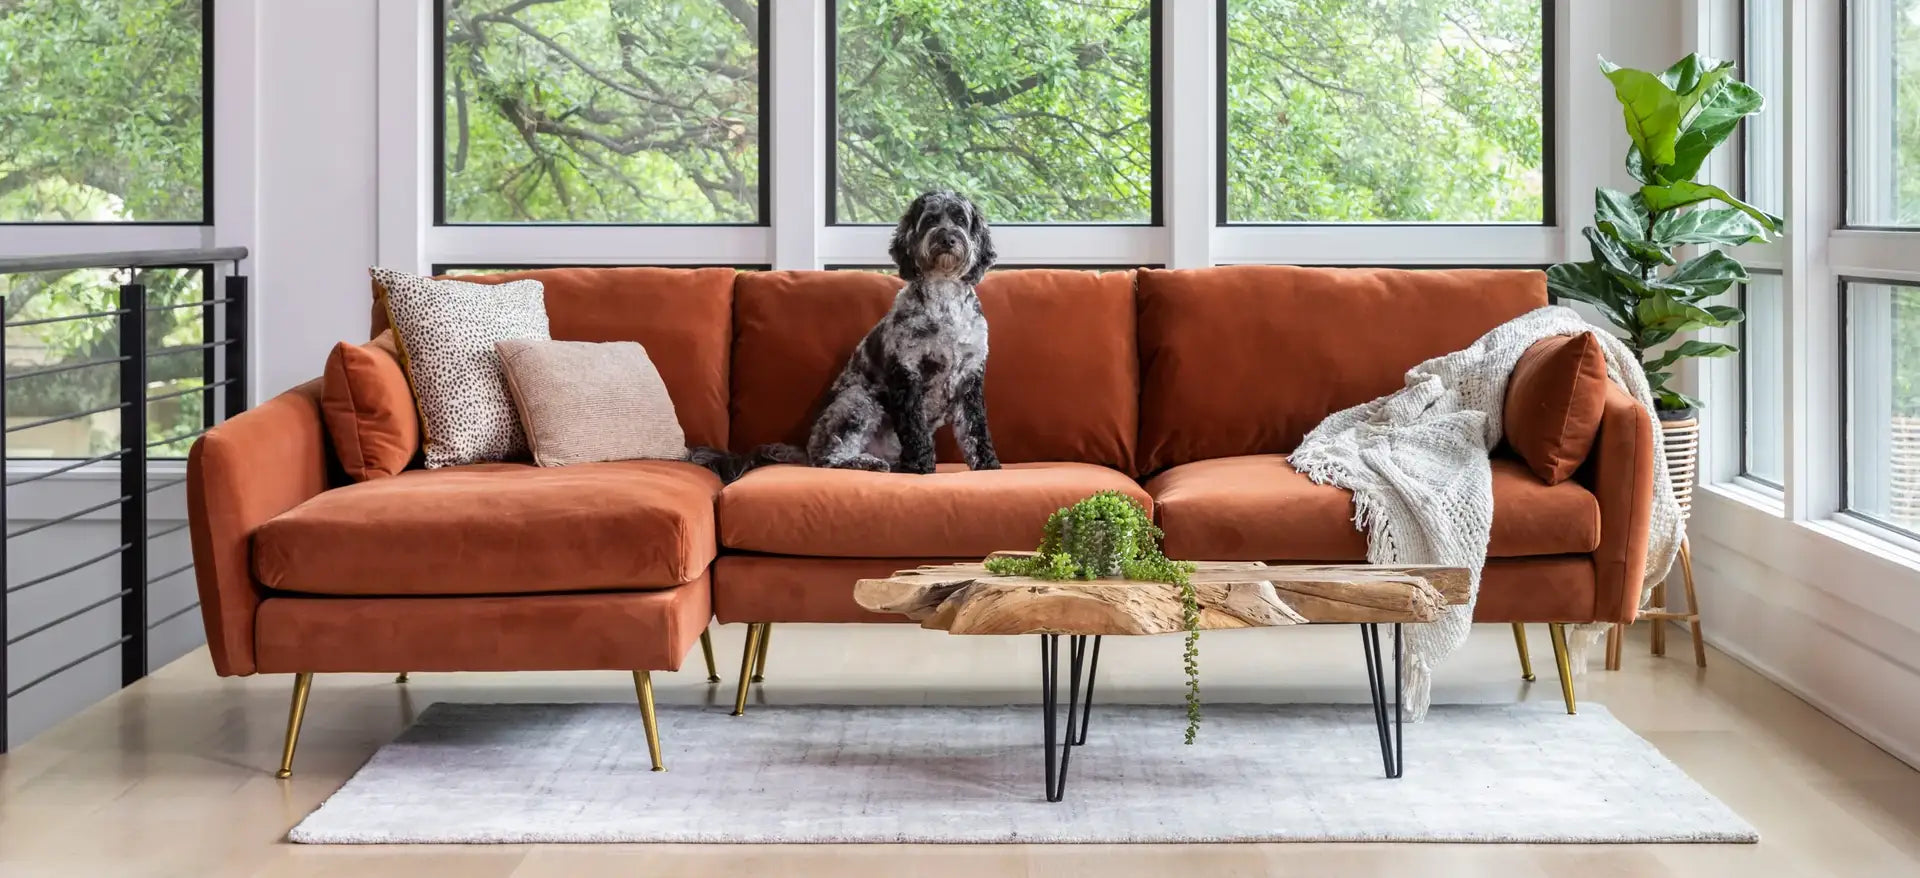 Dog sitting on the Park Sectional Sofa in Rust velvet